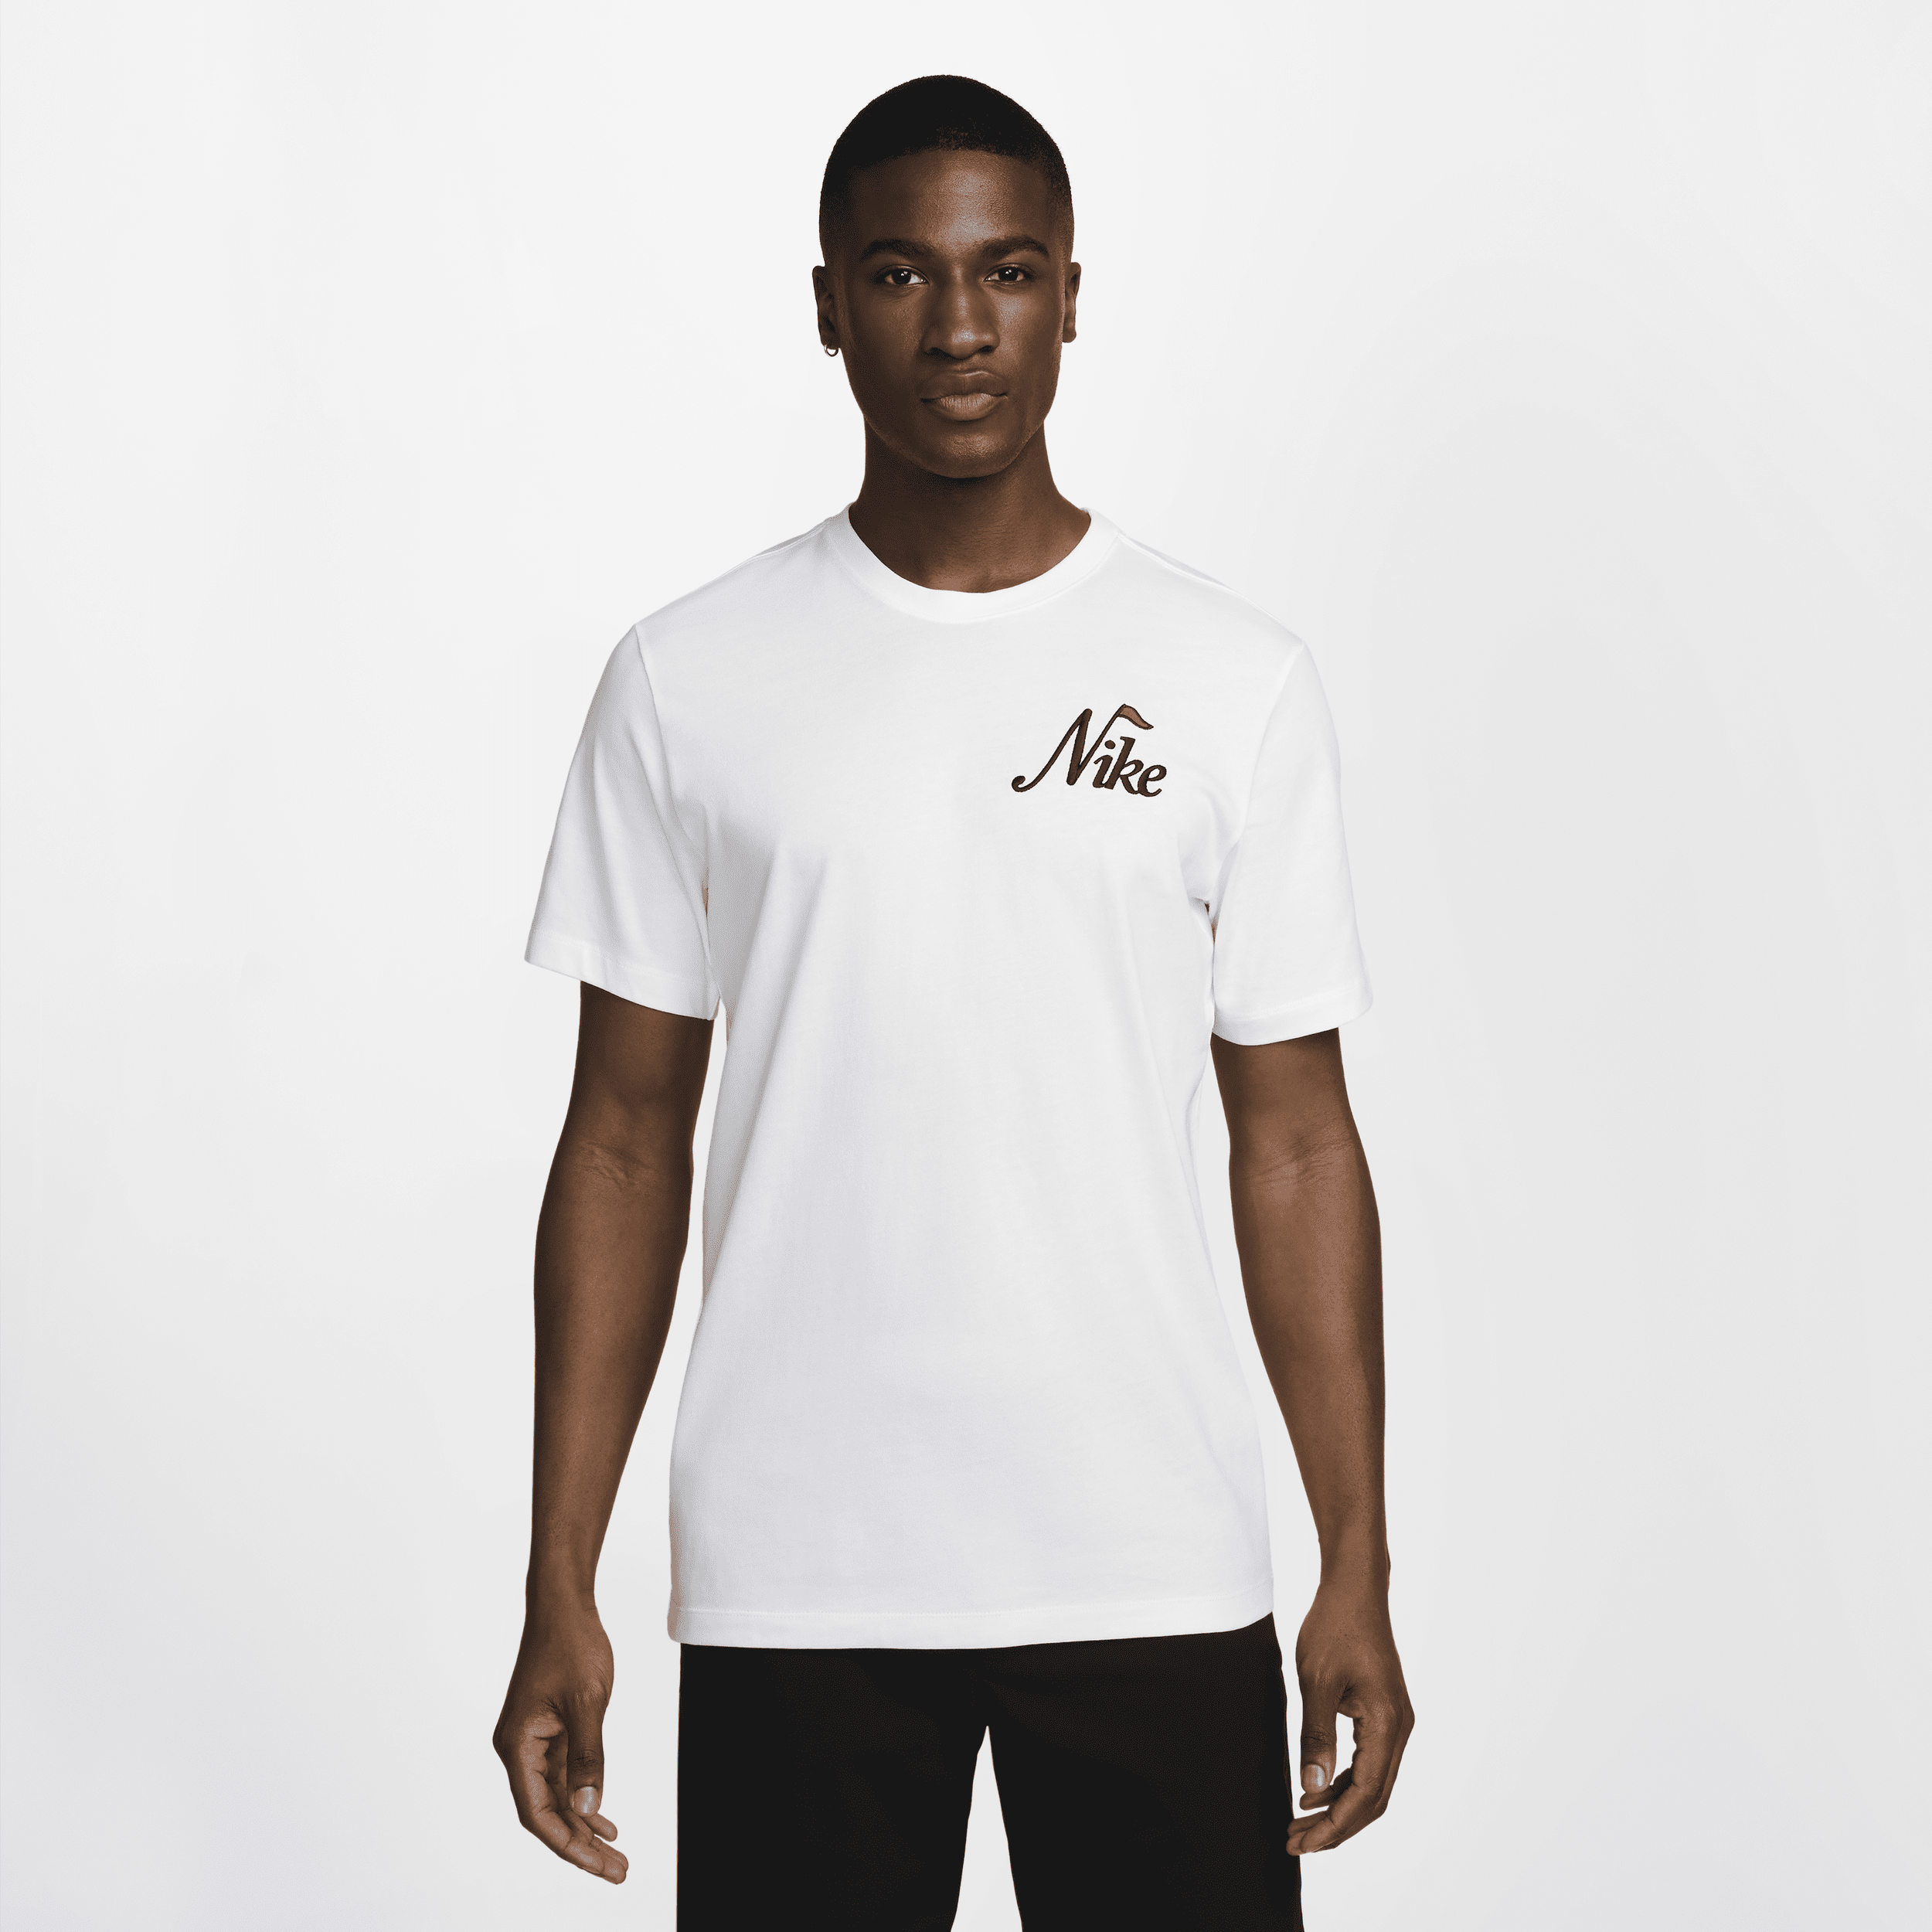 Nike See Ya T-Shirt, White